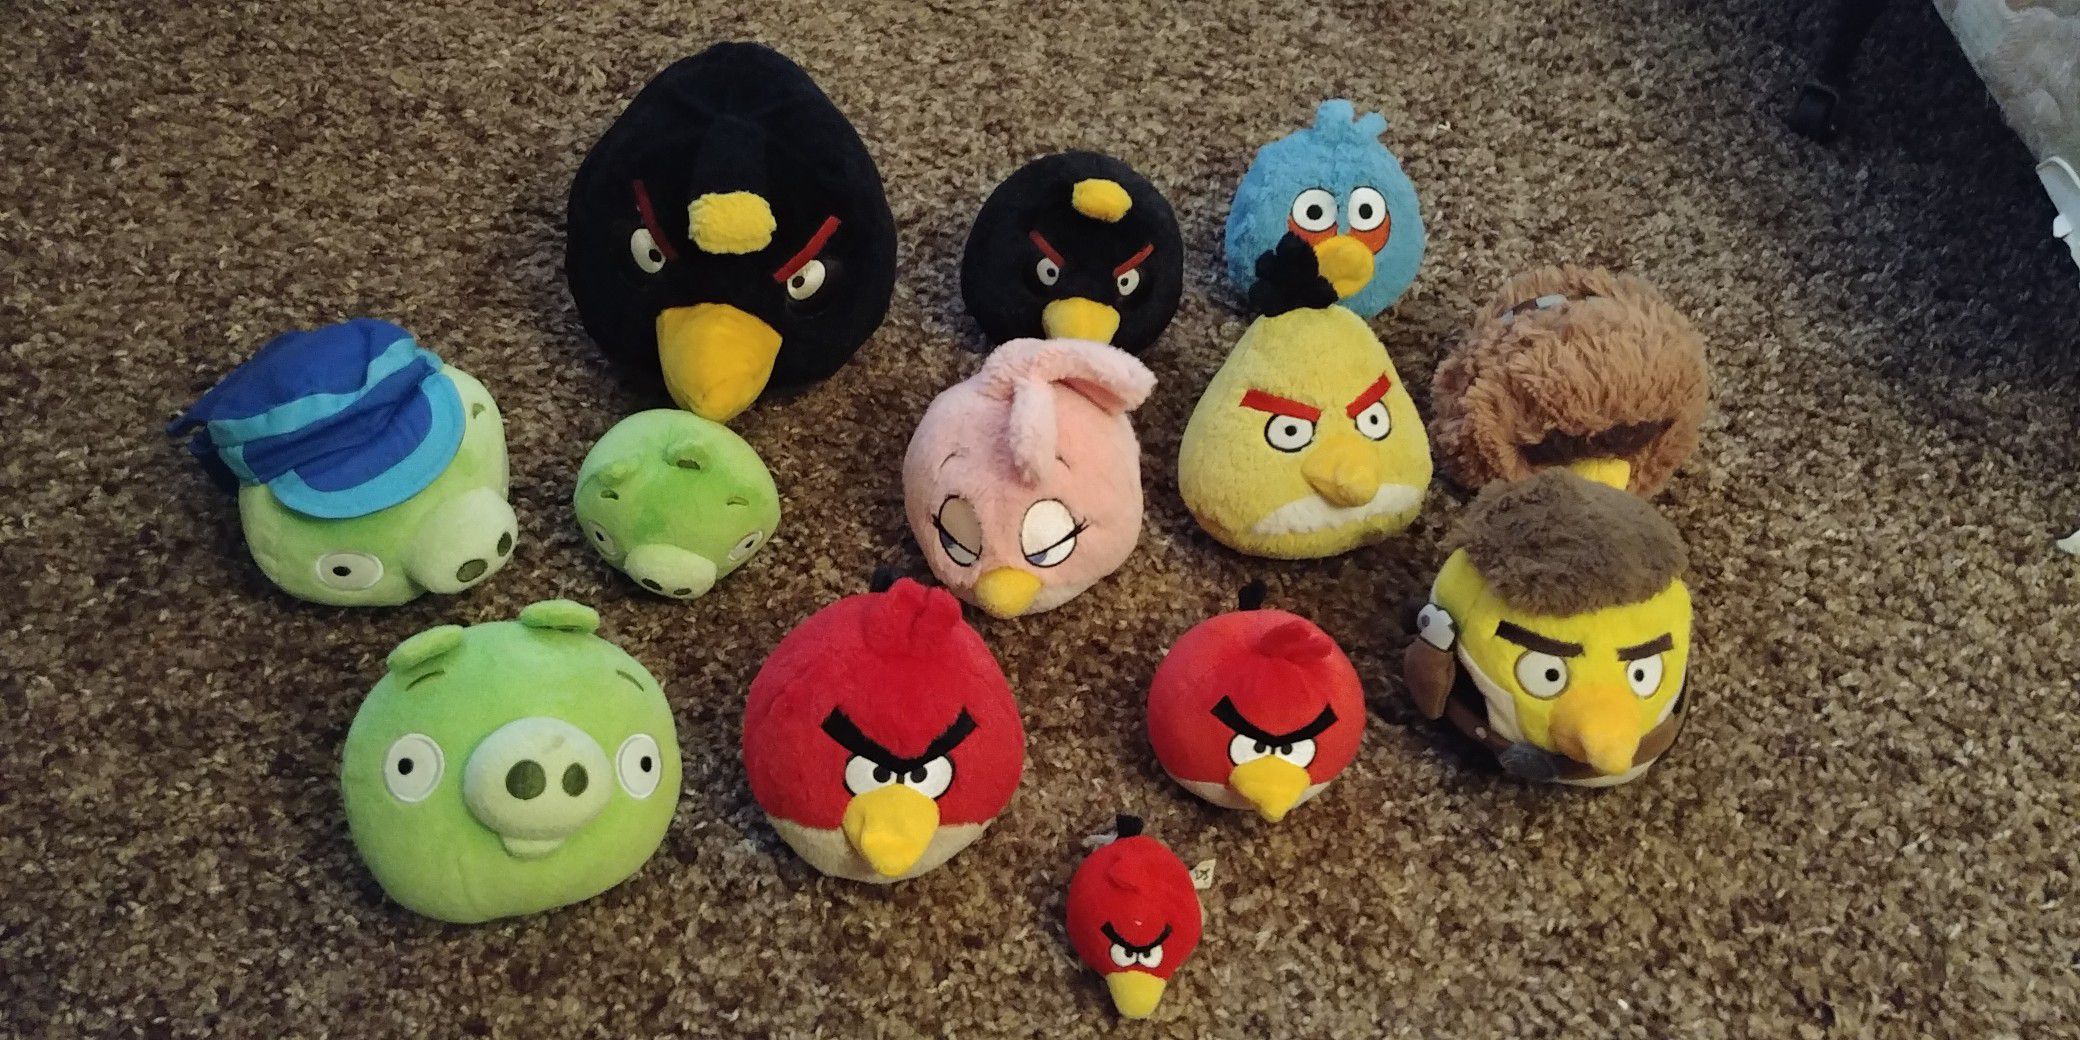 Angry bird stuffed animal lot